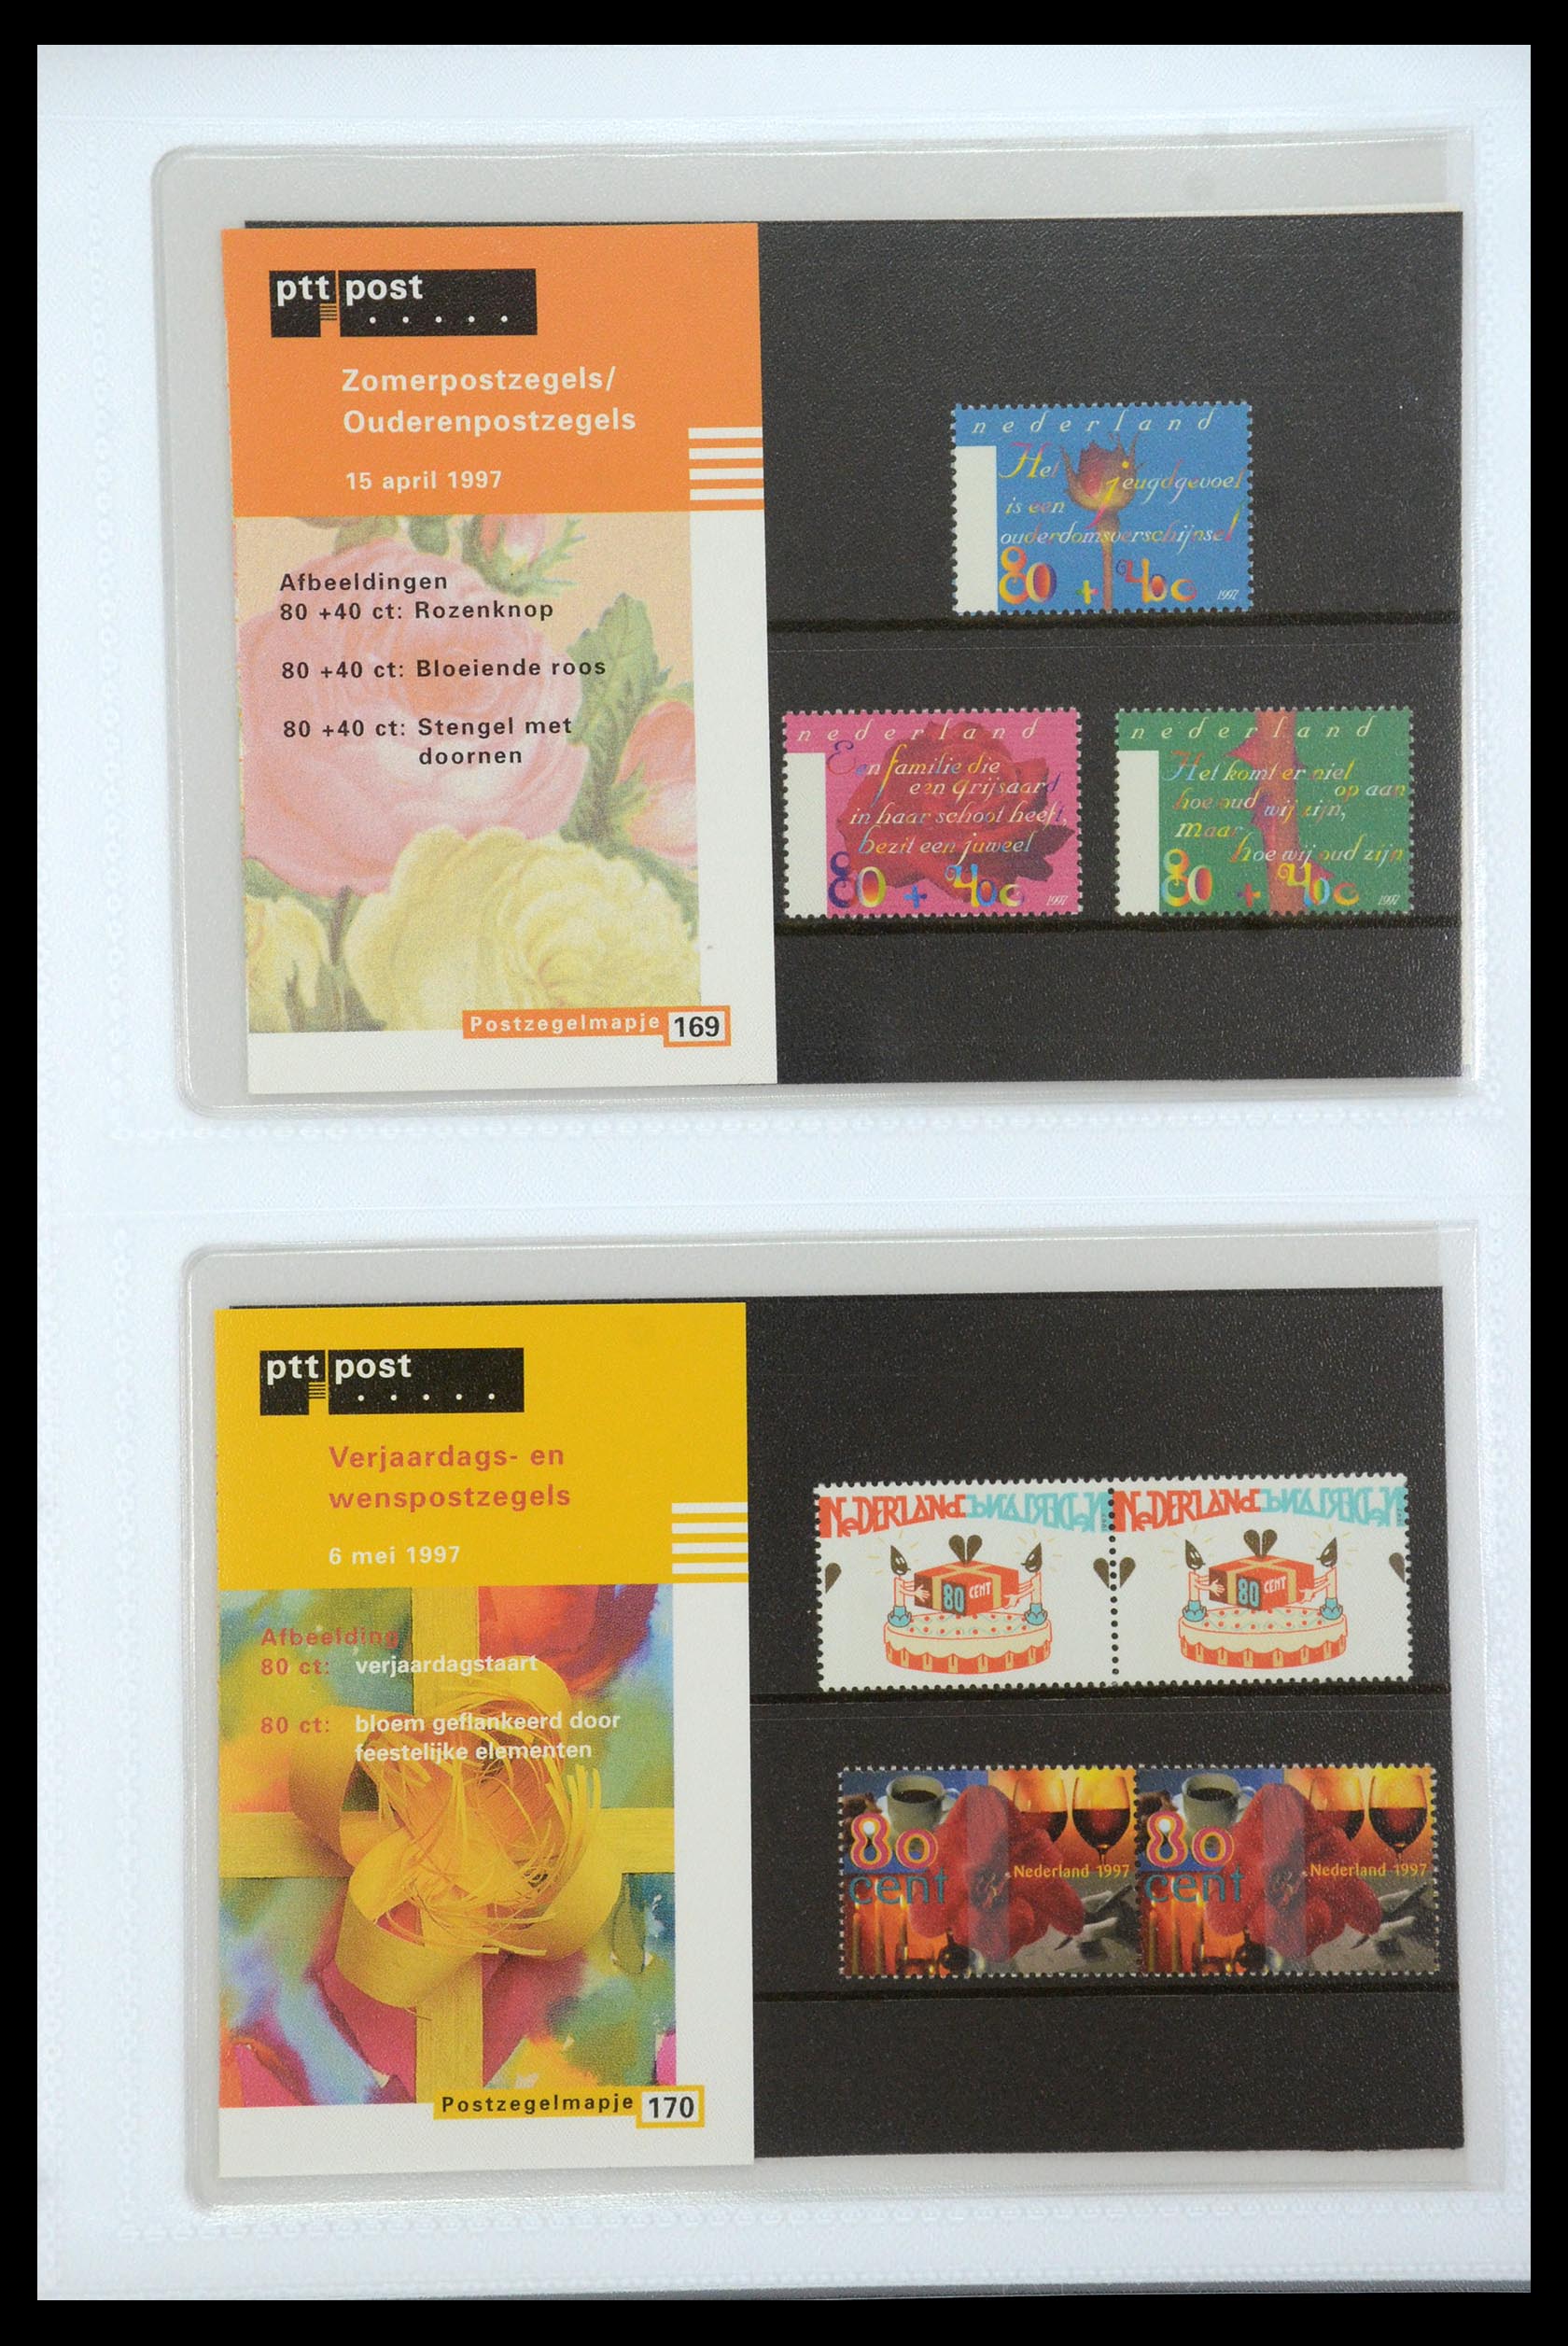 35947 088 - Stamp Collection 35947 Netherlands PTT presentation packs 1982-2019!